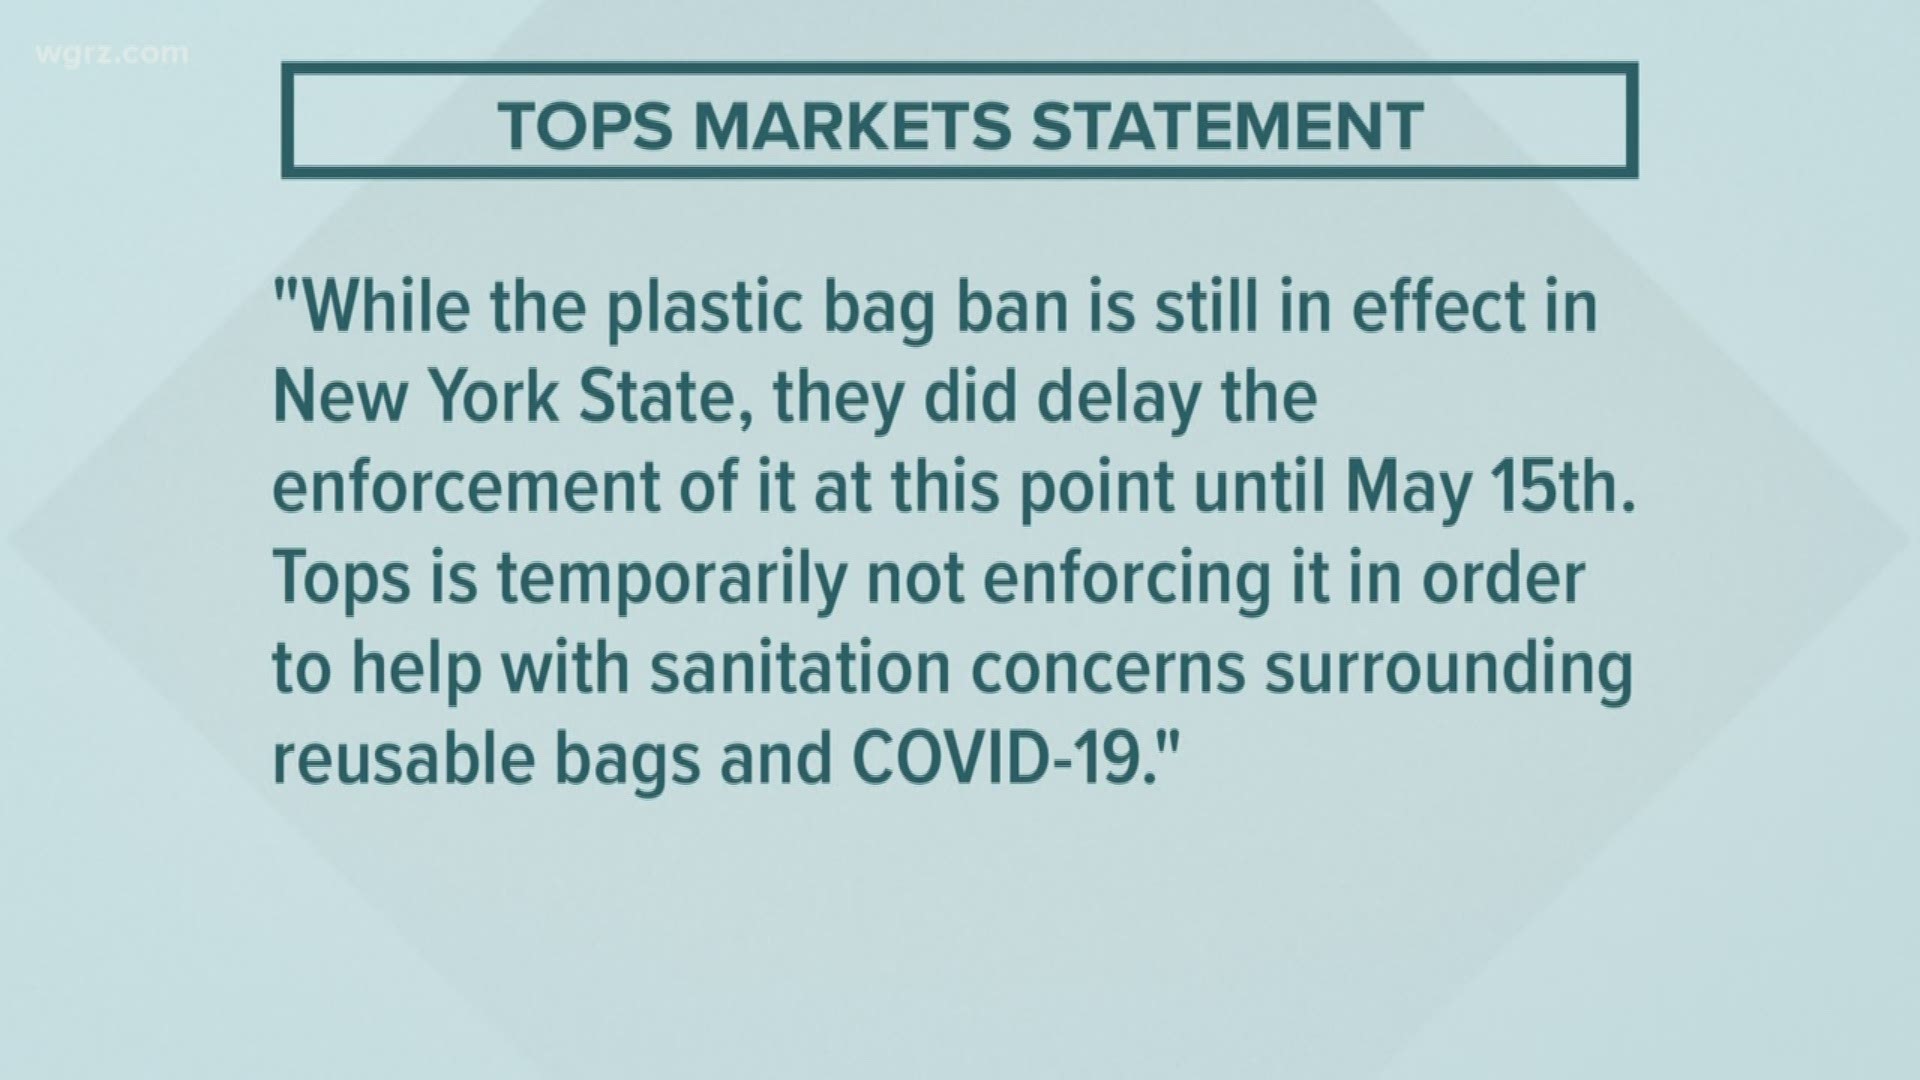 TOPS not enforcing plastic bag ban